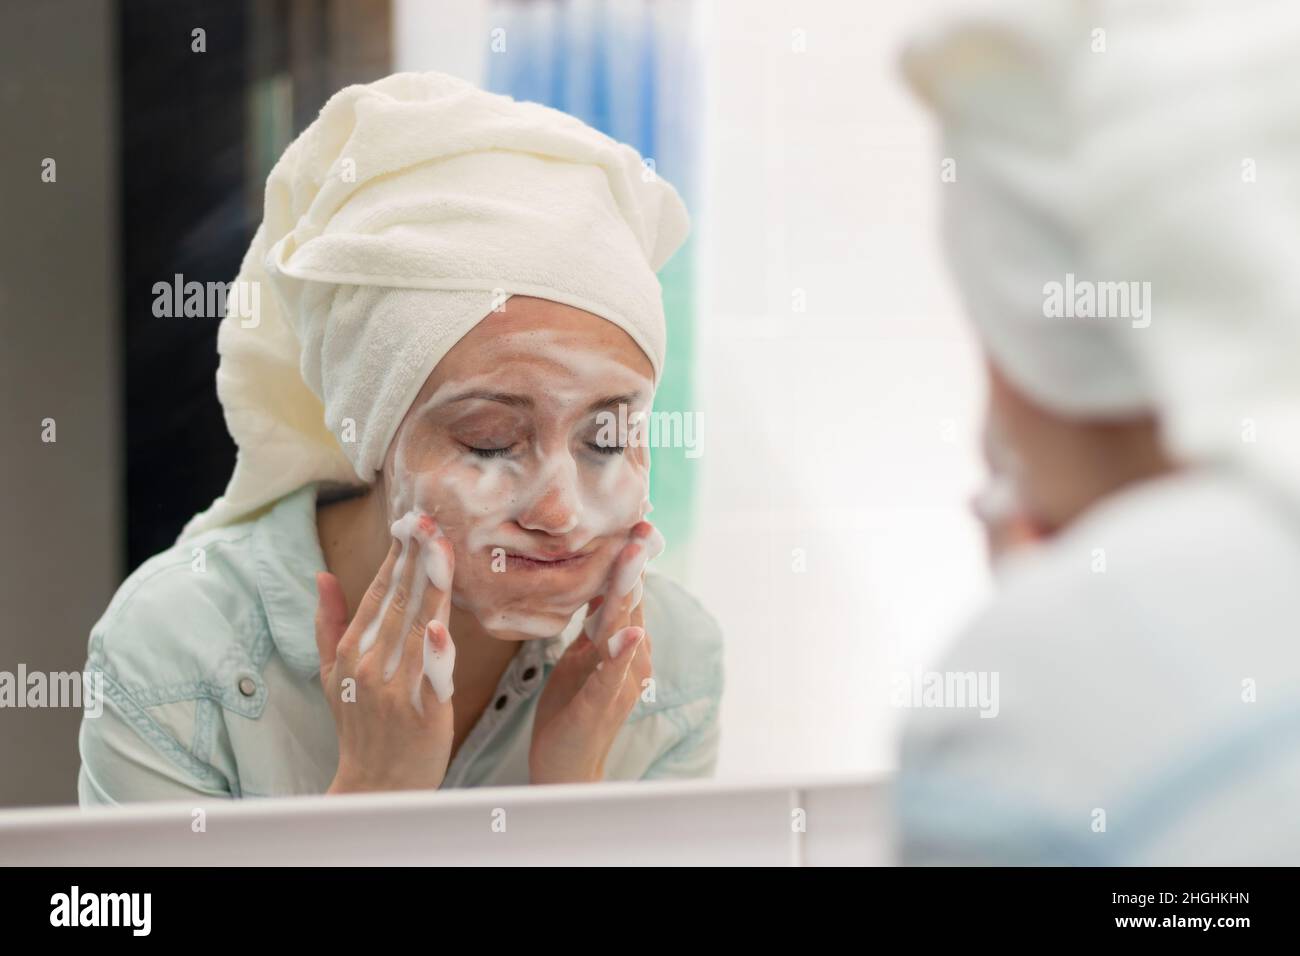 Eine junge Frau mit einem weißen Handtuch auf ihrem Kopf im Badezimmer wäscht eine Gesichtsmaske ab. Spiegelung im Spiegel. Selektiver Fokus. Nahaufnahme. Hochformat Stockfoto